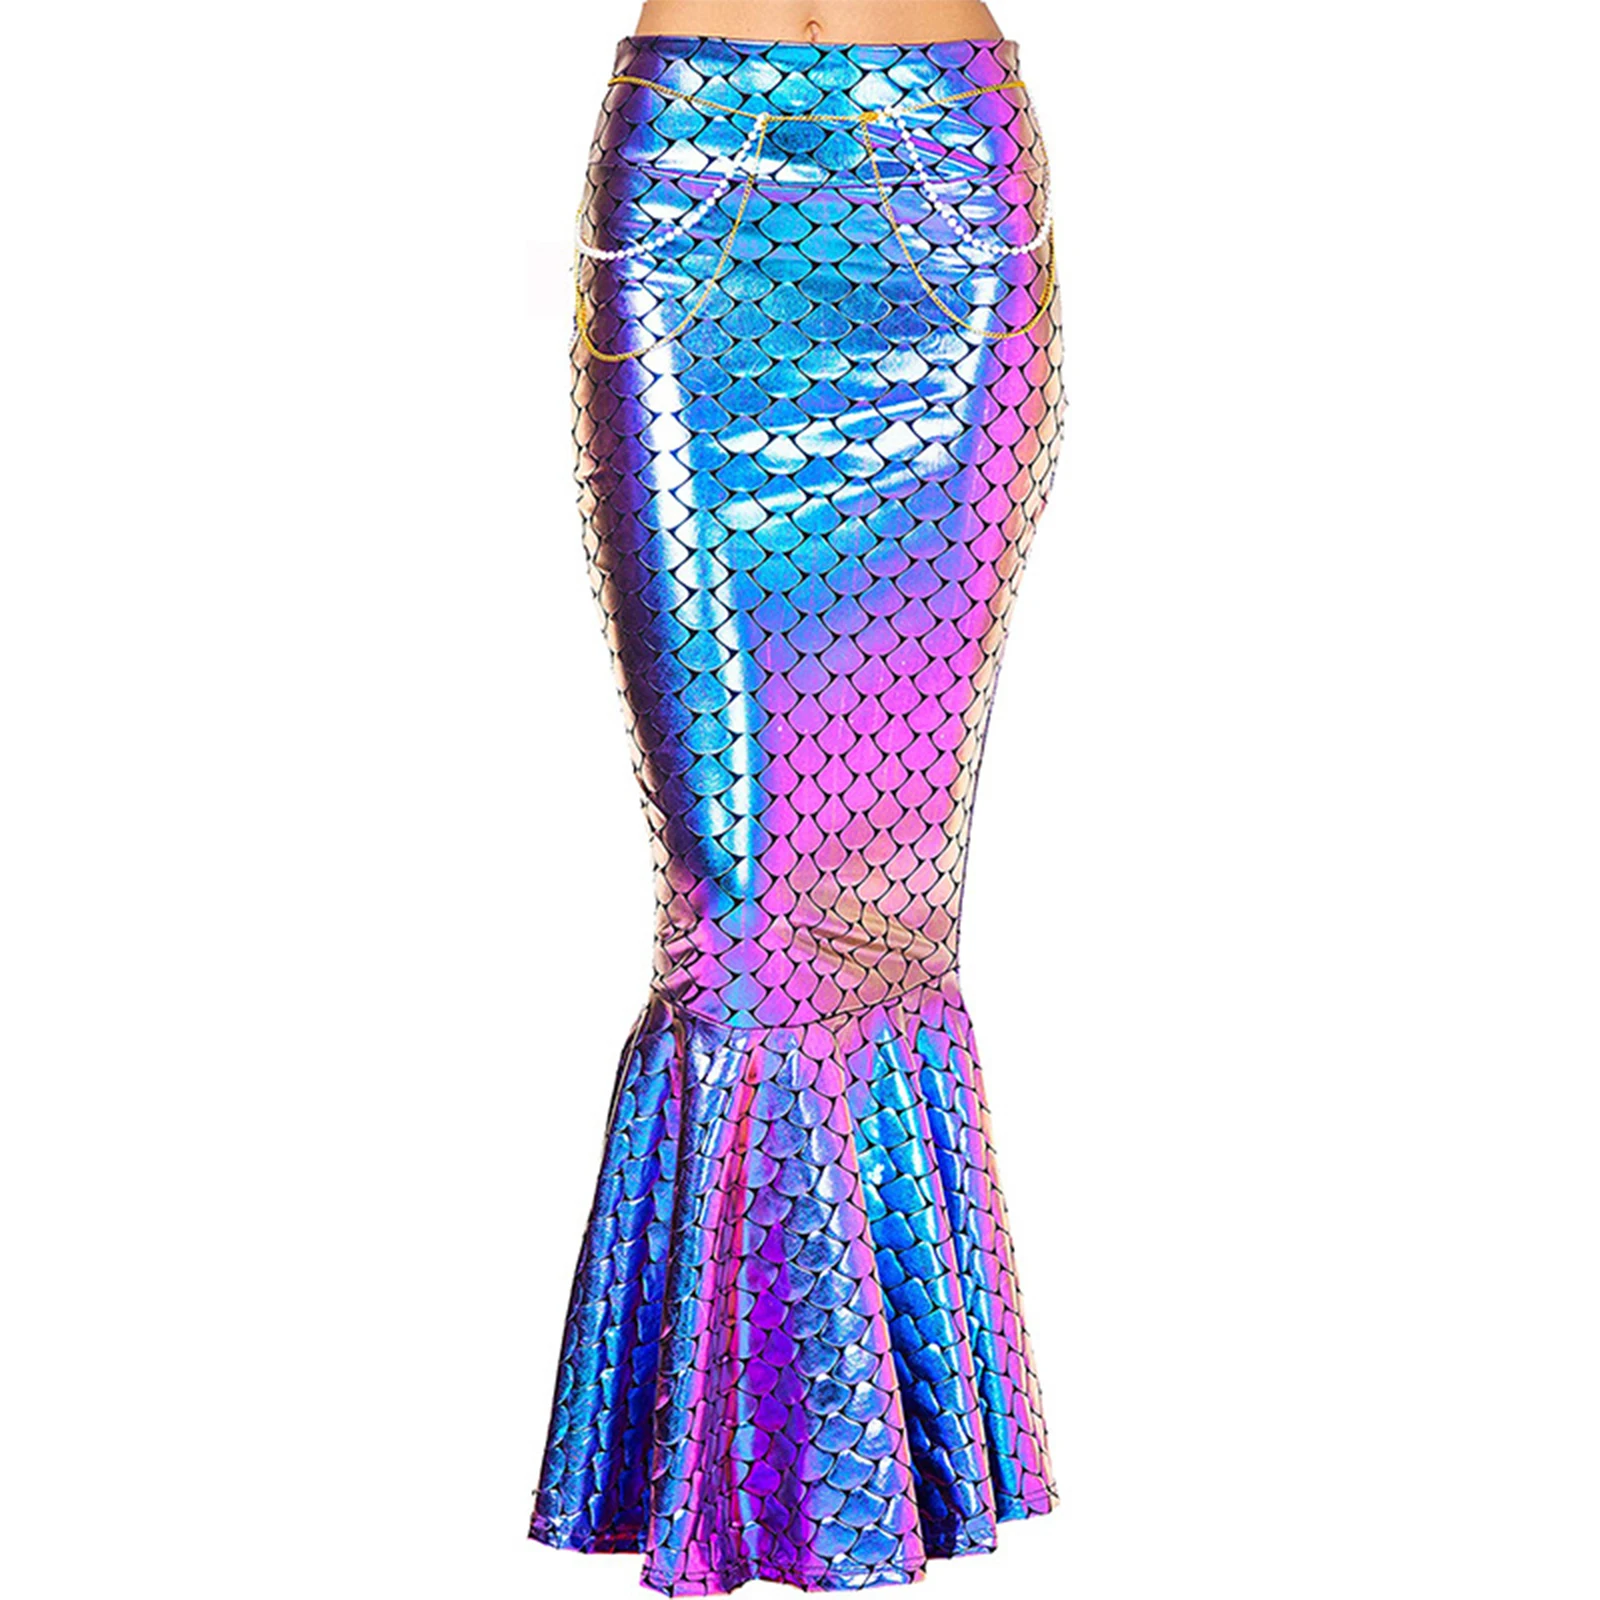 

Женский костюм русалки хвост для ролевых игр юбка с принтом рыбьей чешуи длинная юбка с высокой талией необычное блестящее платье для косплея